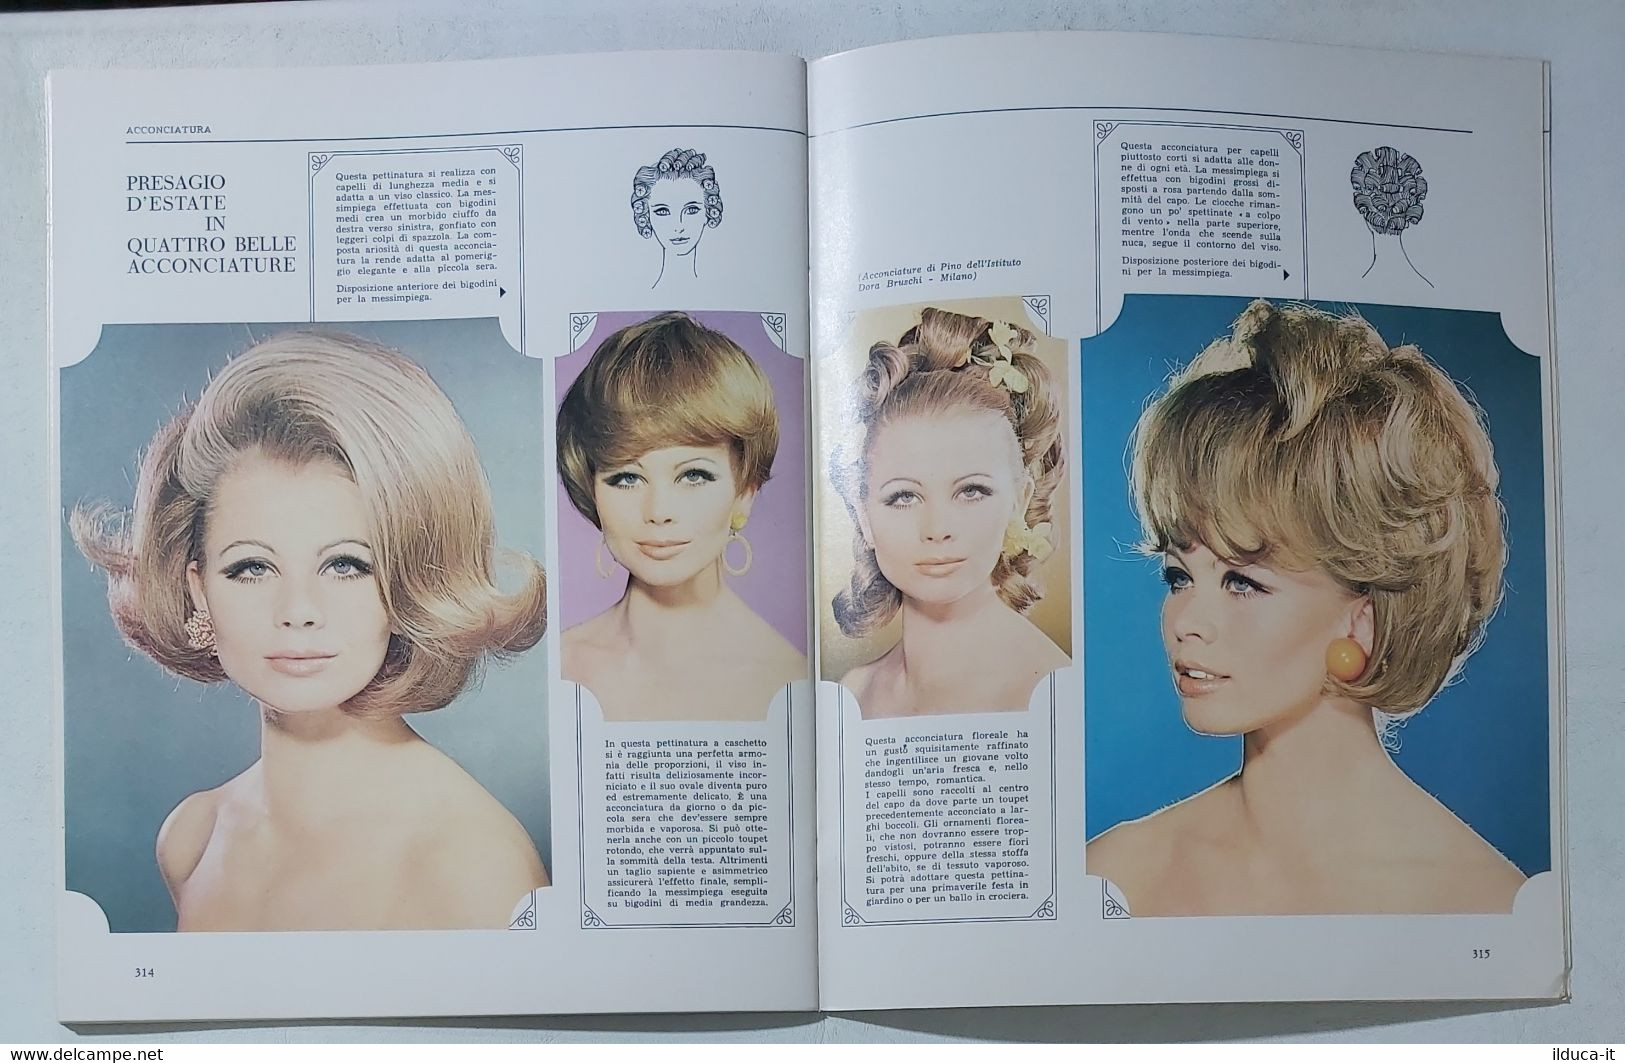 14766 SPECCHIO D'ORO Enciclopedia Della Bellezza - N. 16 1967 - Depilatori Crem - Health & Beauty